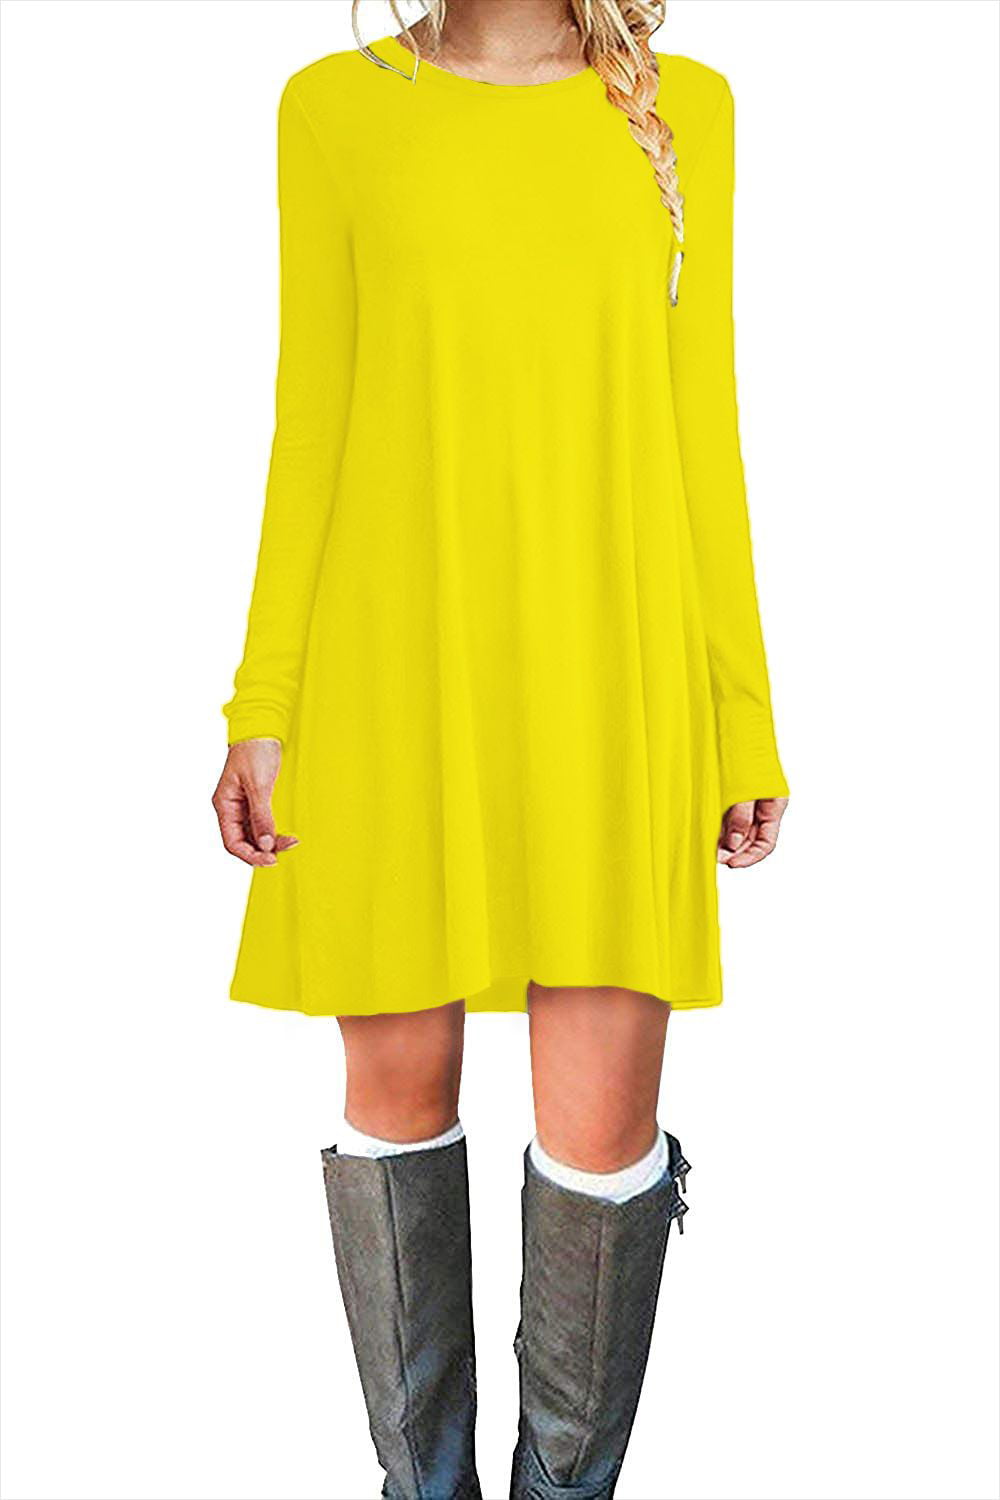 MOLERANI Women's Long Sleeve Shirt Casual Loose Swing Dress, Yellow，S -  Walmart.com